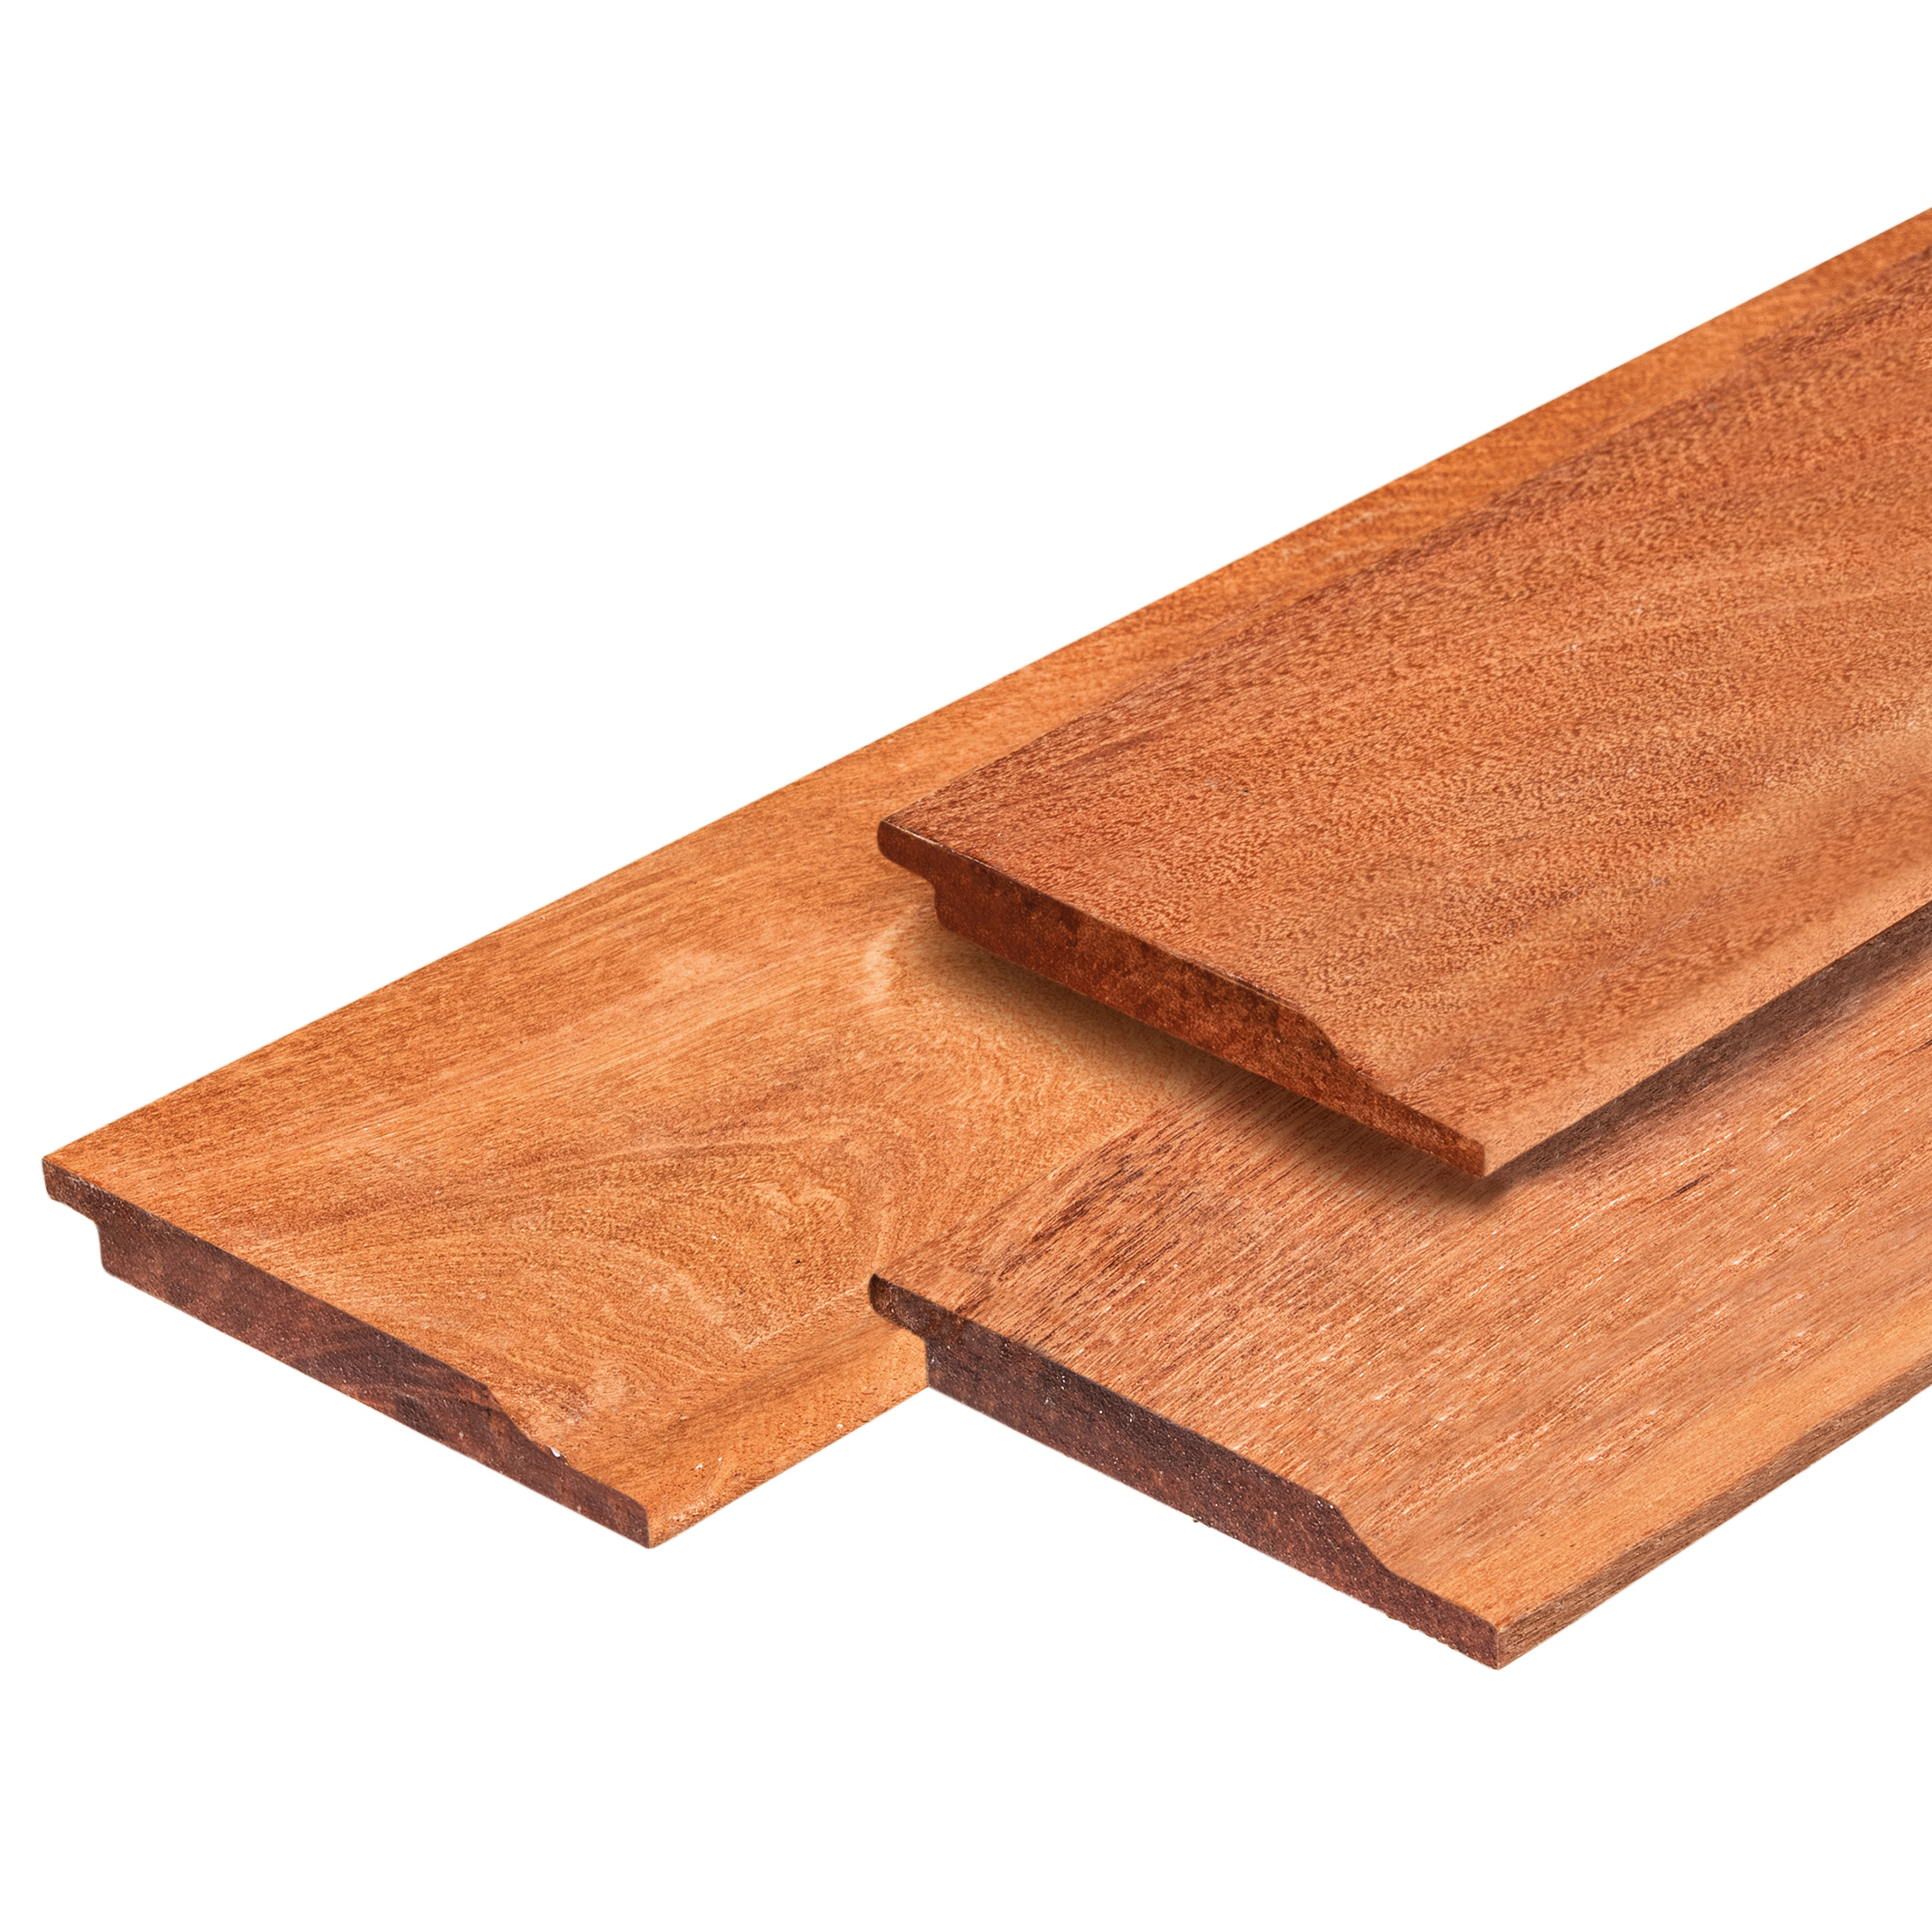 gebruiker Hilarisch Sluiting Halfhouts rabat hardhout 1.6x14.0x305cm | Elegant Wood